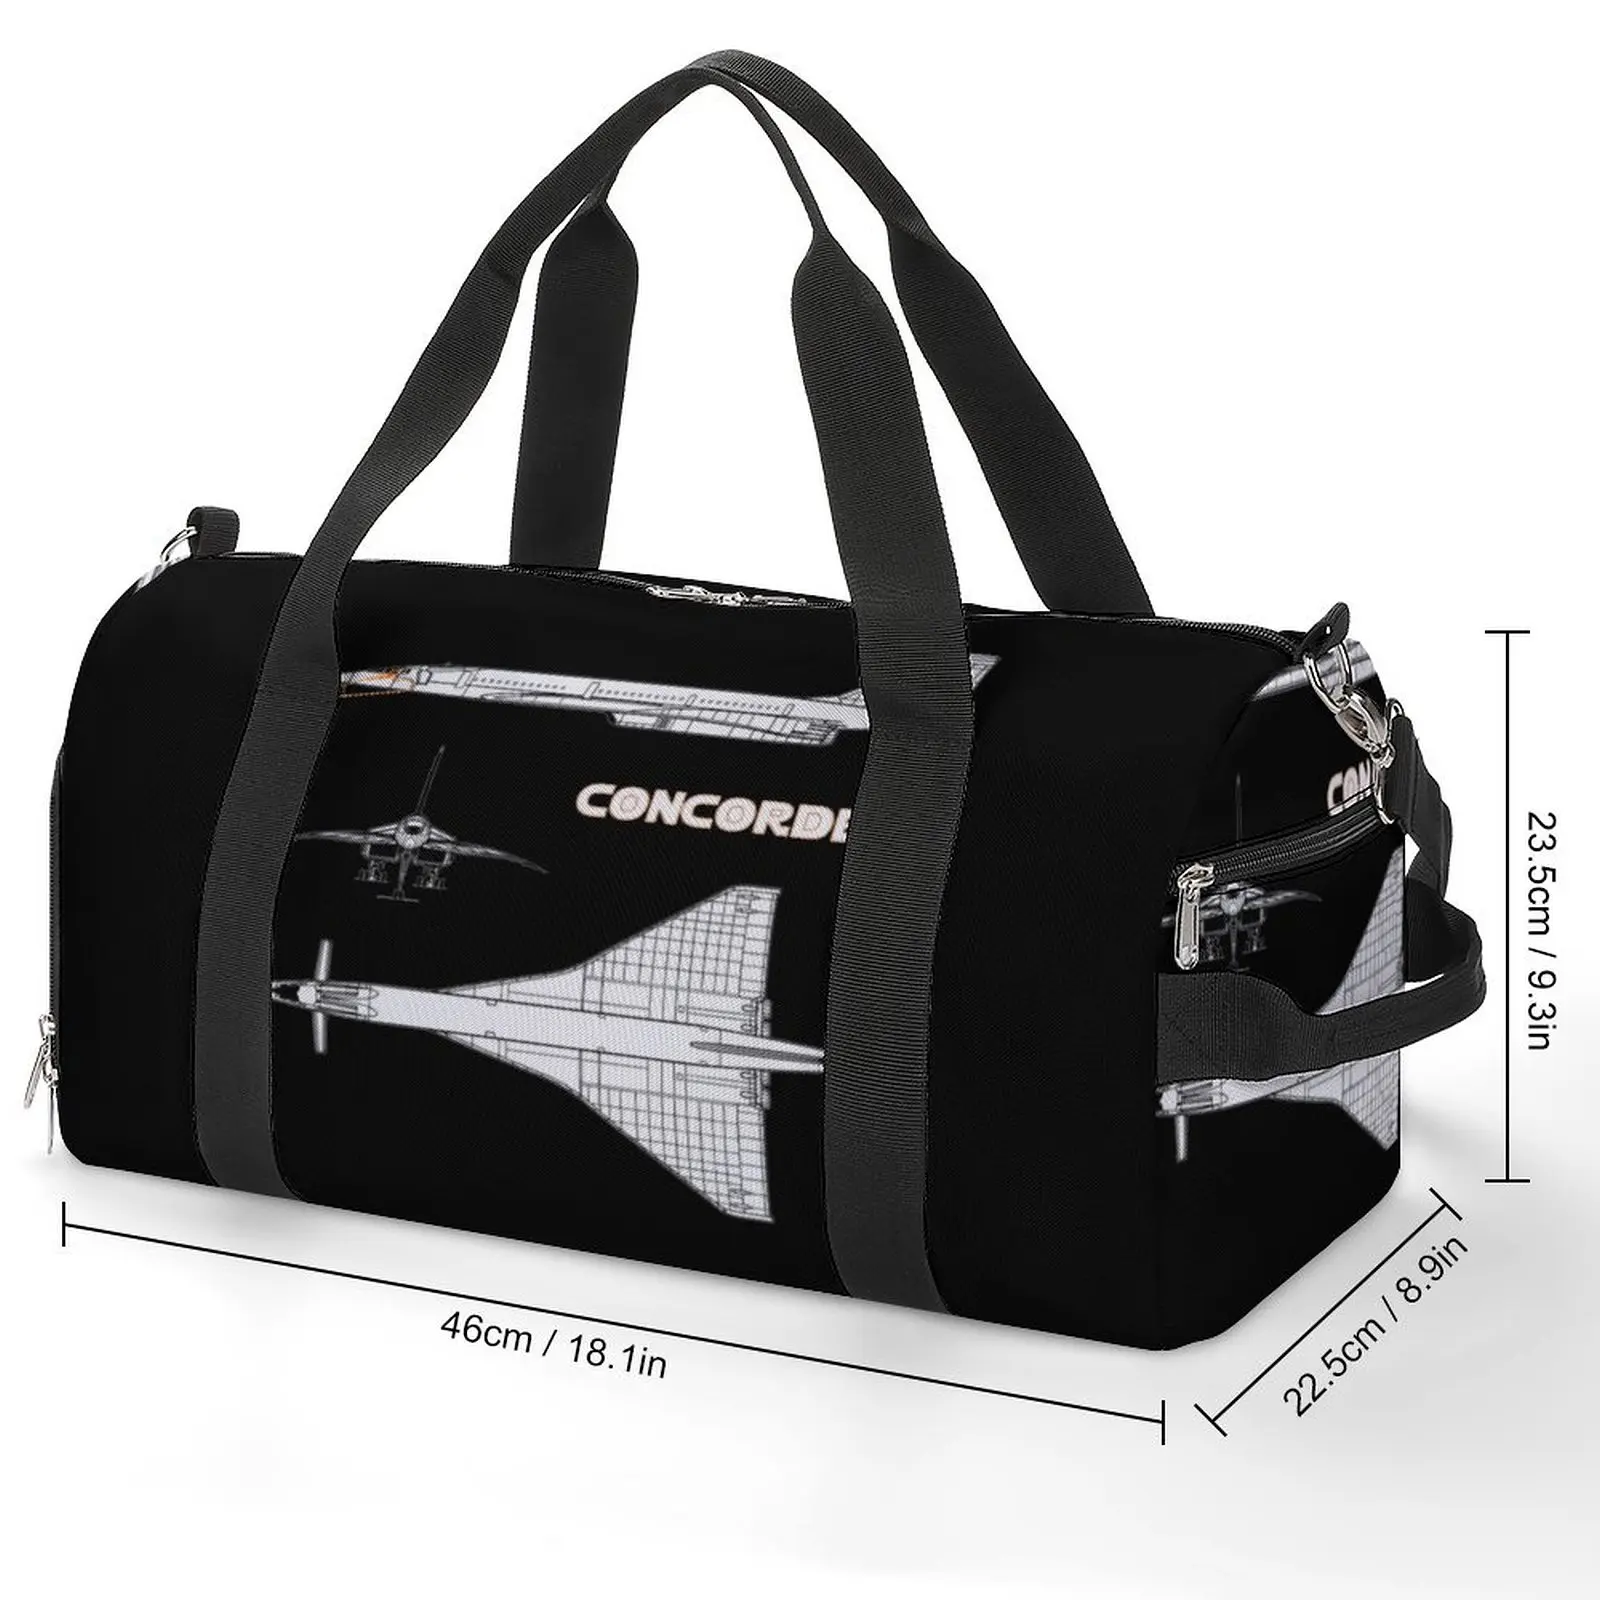 Спортивные сумки Concorde Supersonic Airplane, схема самолета, Тренировочная спортивная сумка с обувью, винтажные сумки, мужская уличная сумка для фитнеса1